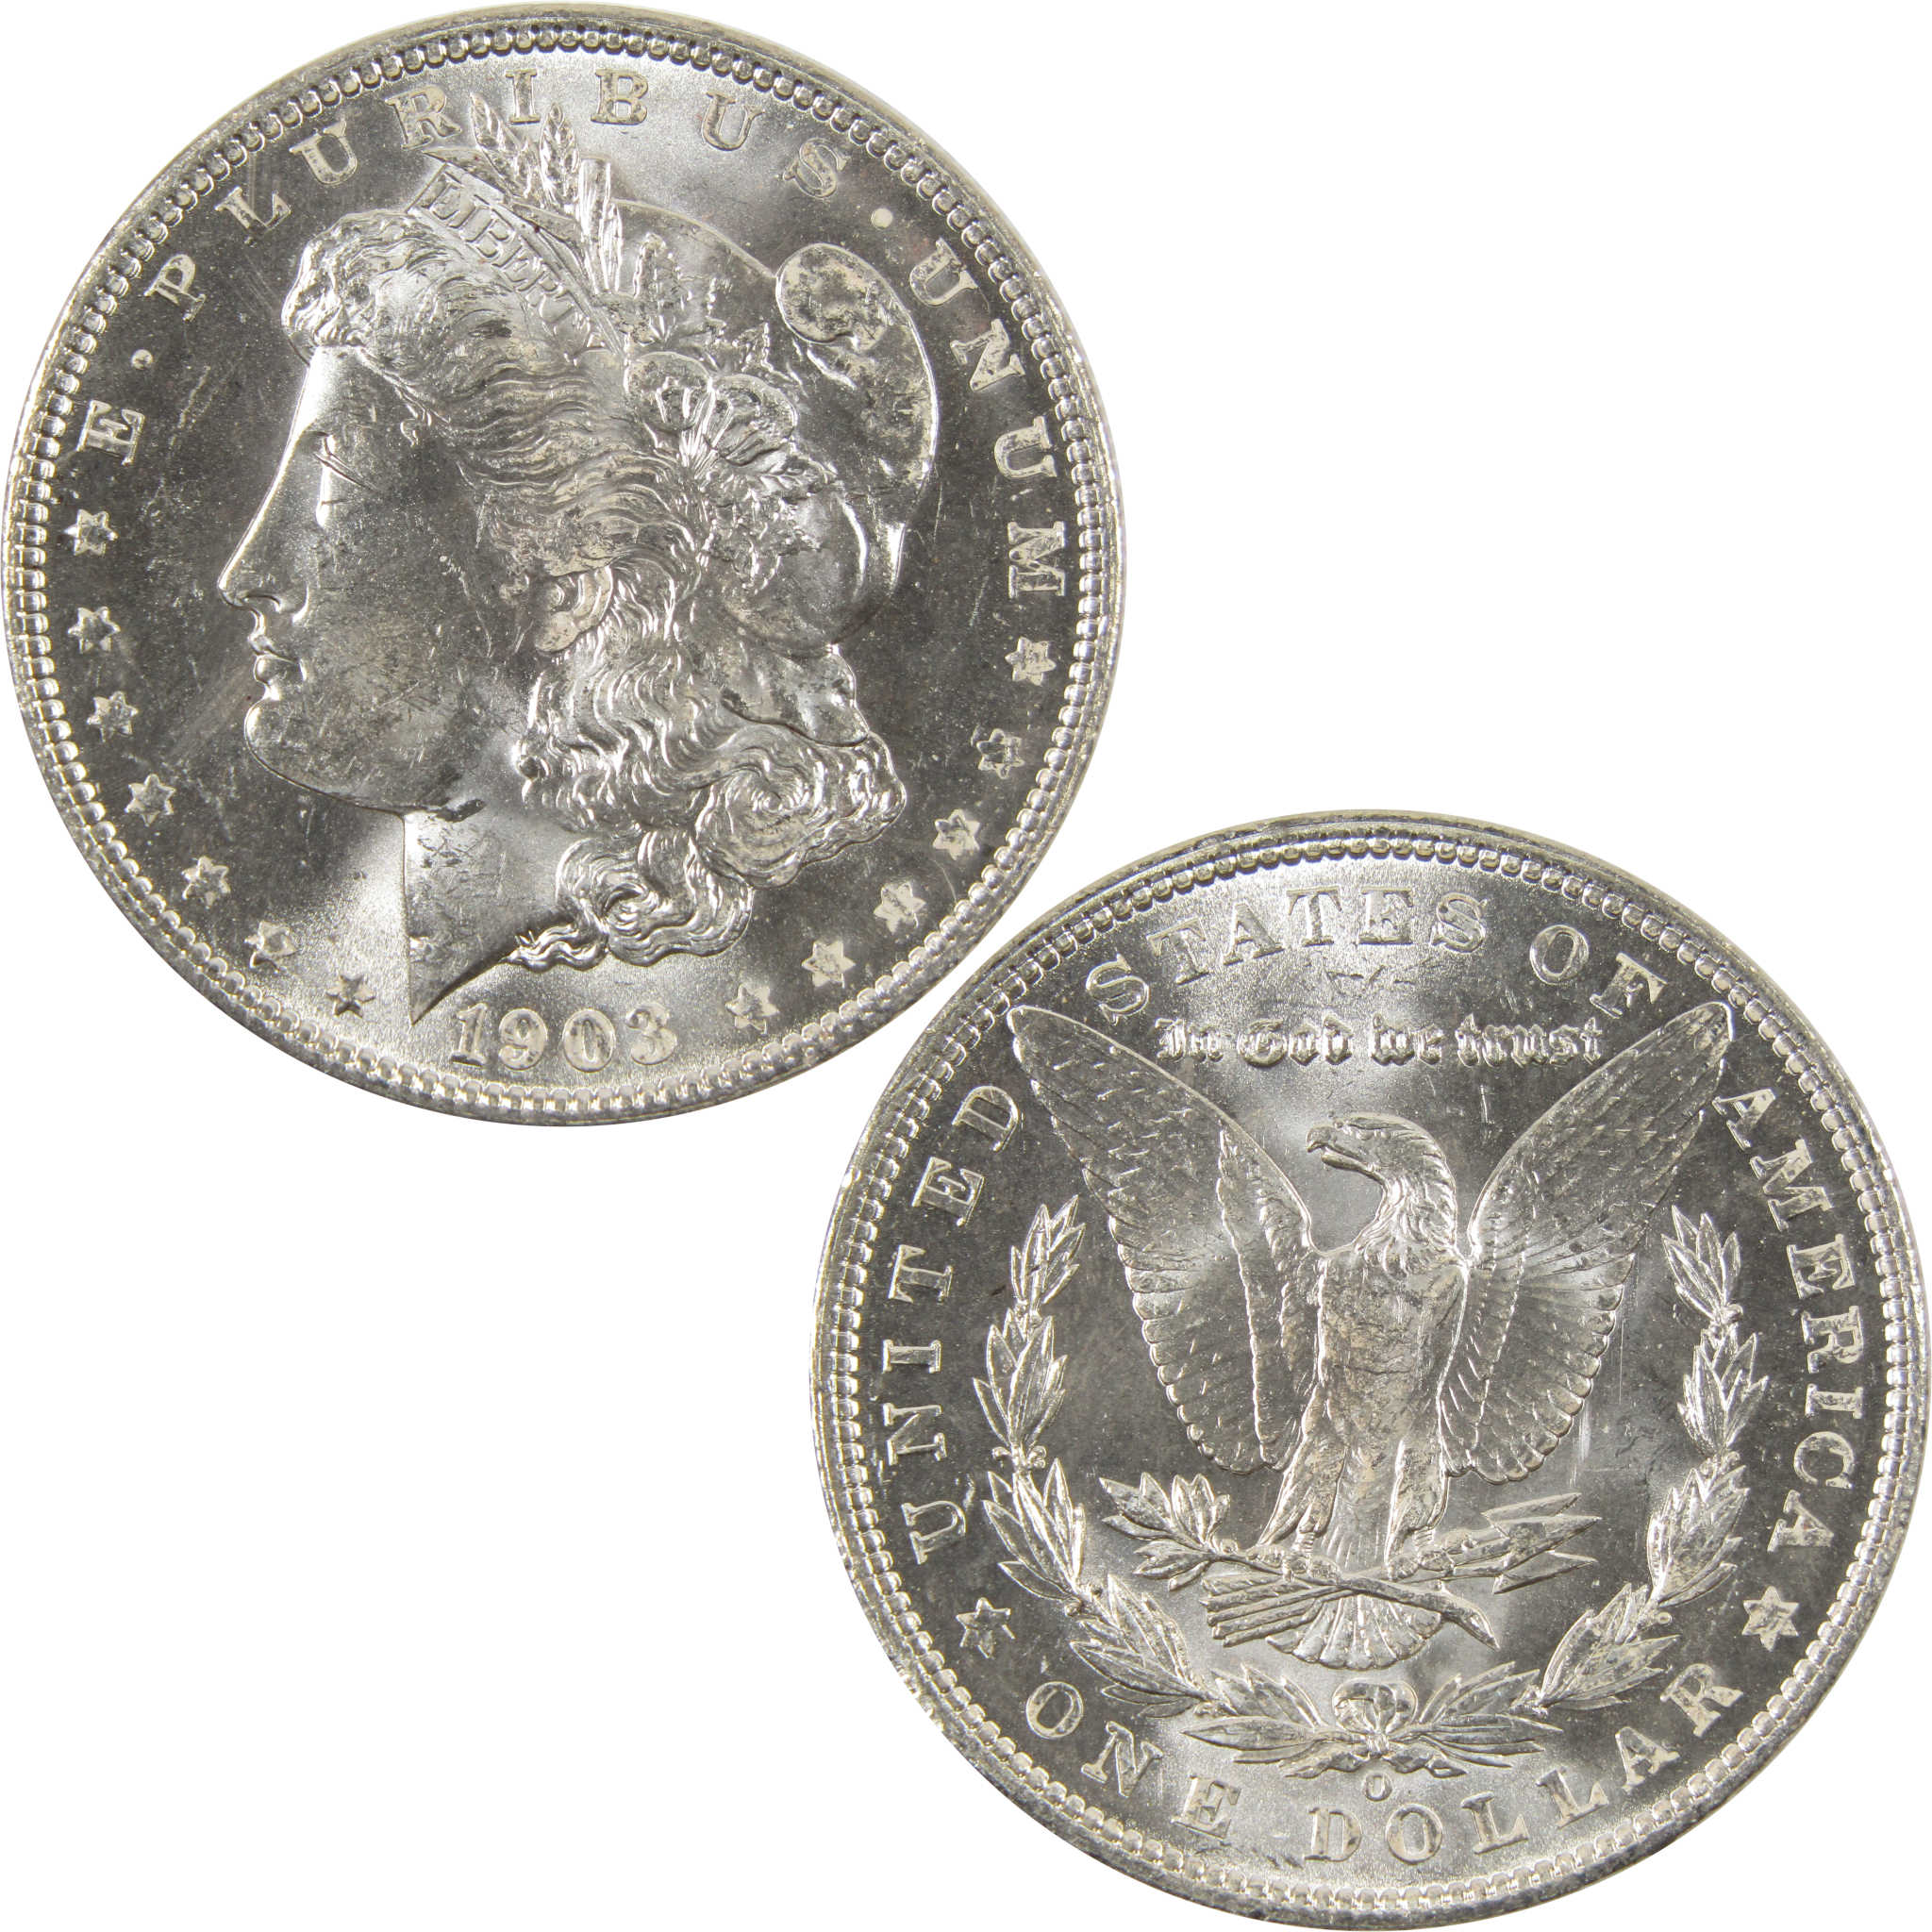 1903 O Morgan Dollar BU Choice Uncirculated 90% Silver $1 SKU:I7513 - Morgan coin - Morgan silver dollar - Morgan silver dollar for sale - Profile Coins &amp; Collectibles